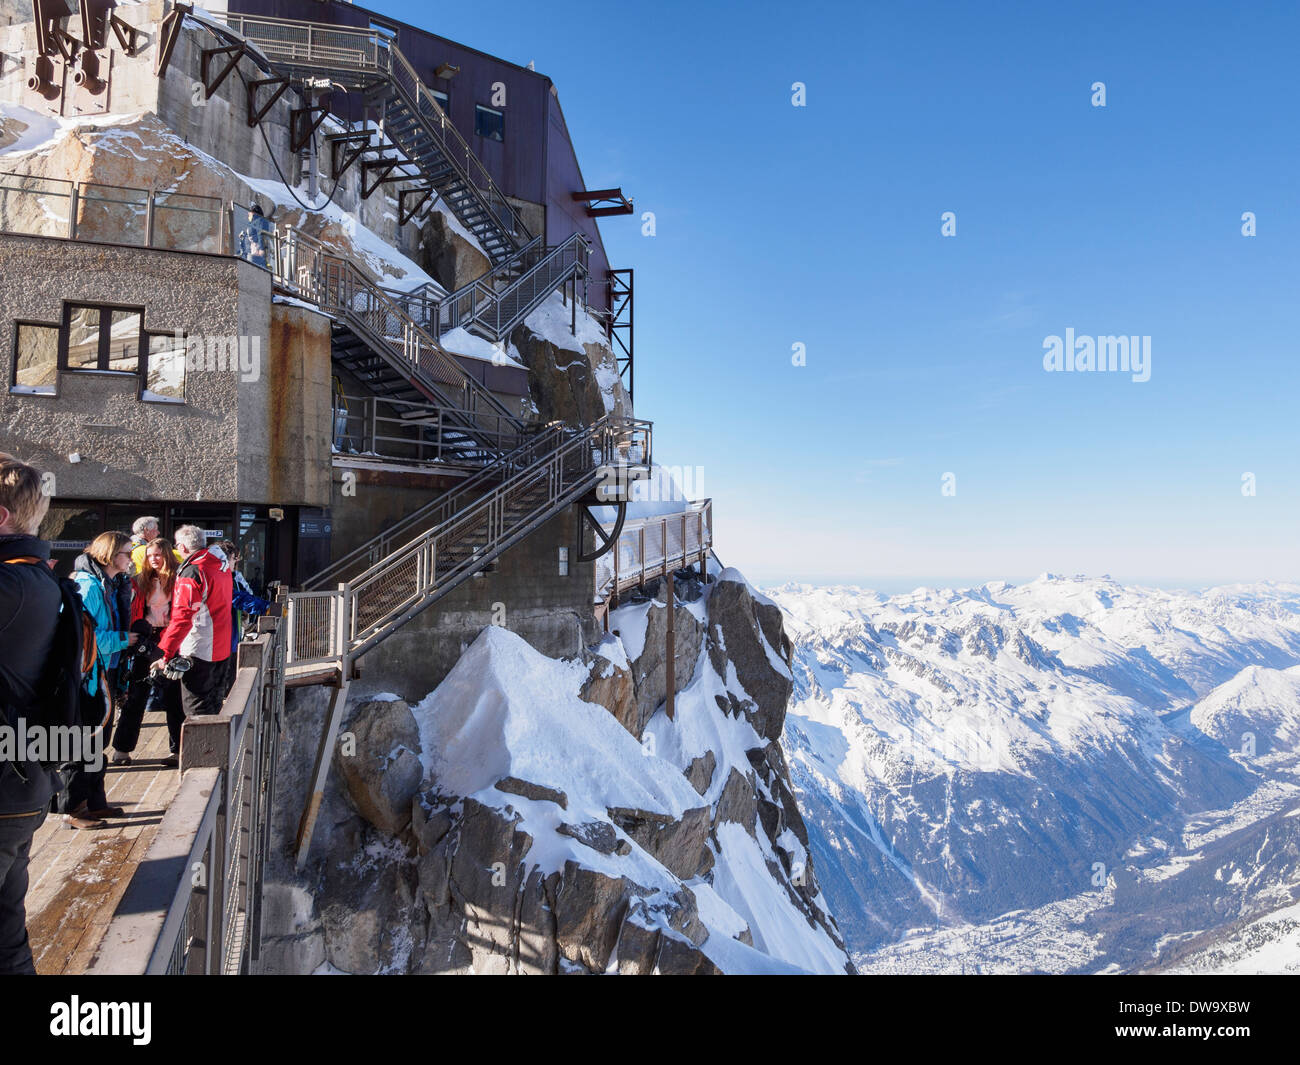 Les gens sur le pont plate-forme panoramique au sommet du téléphérique de l'Aiguille du Midi station de téléphérique. Chamonix-Mont-Blanc Rhone-Alpes France Banque D'Images